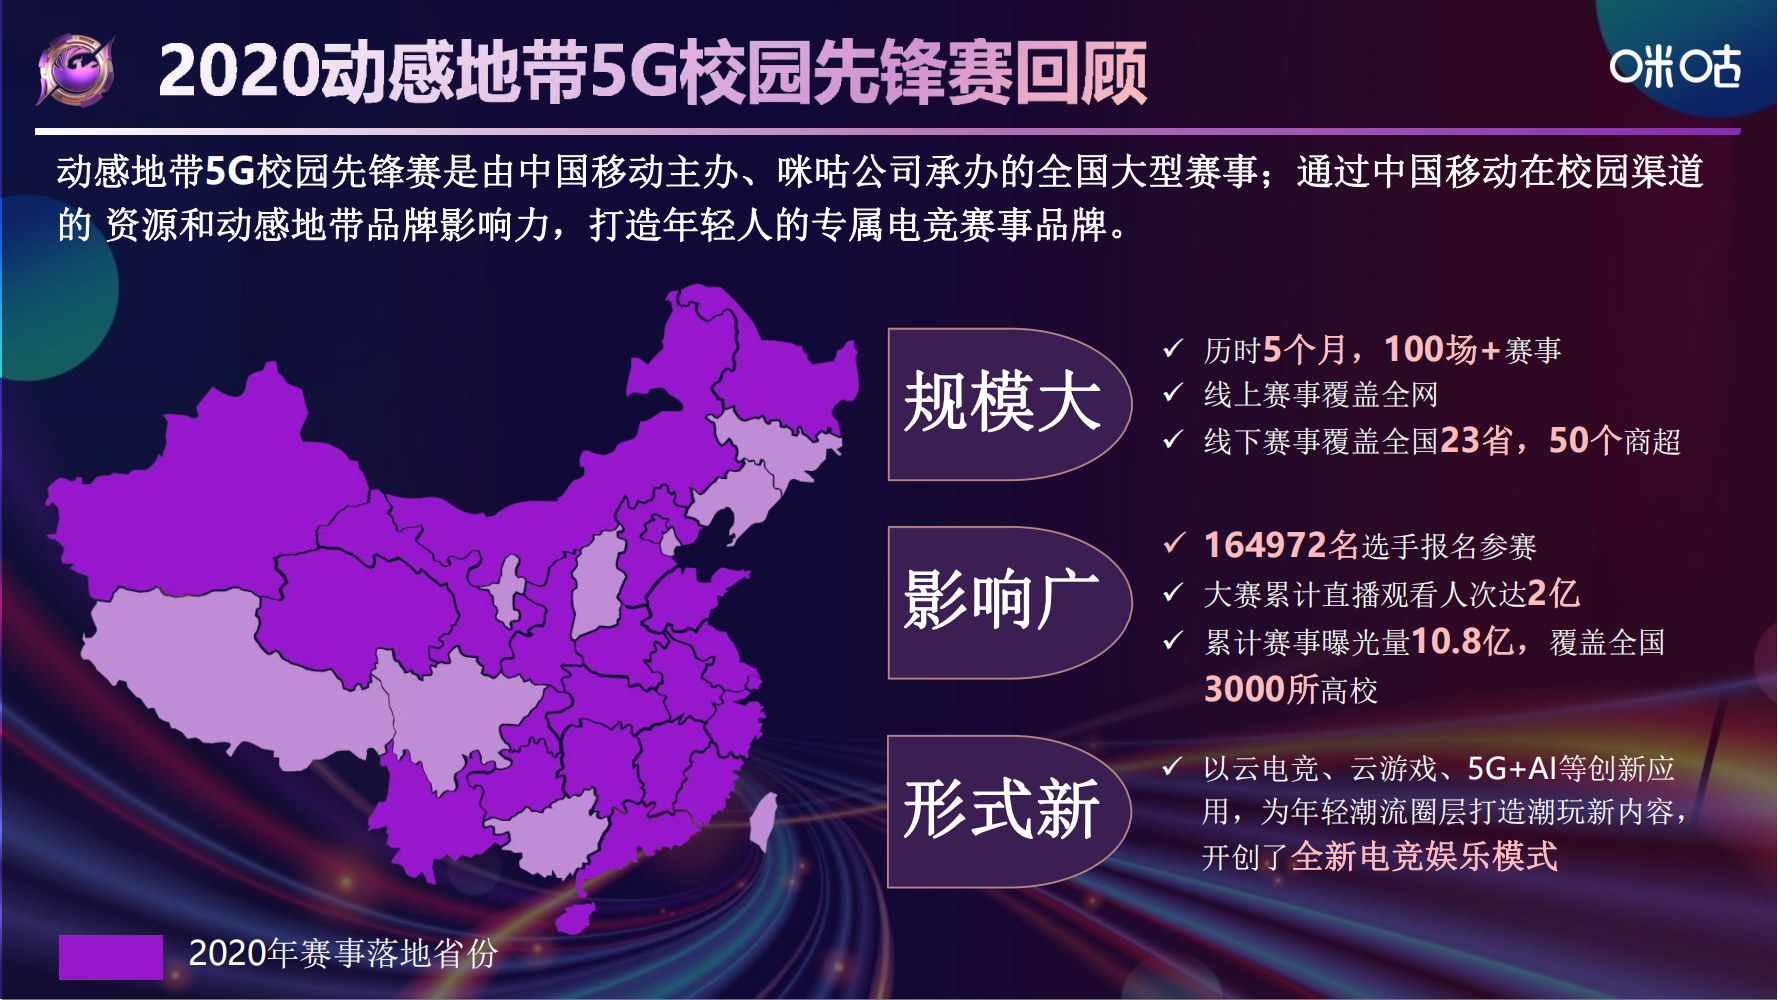 中国移动电子竞技大赛招商方案